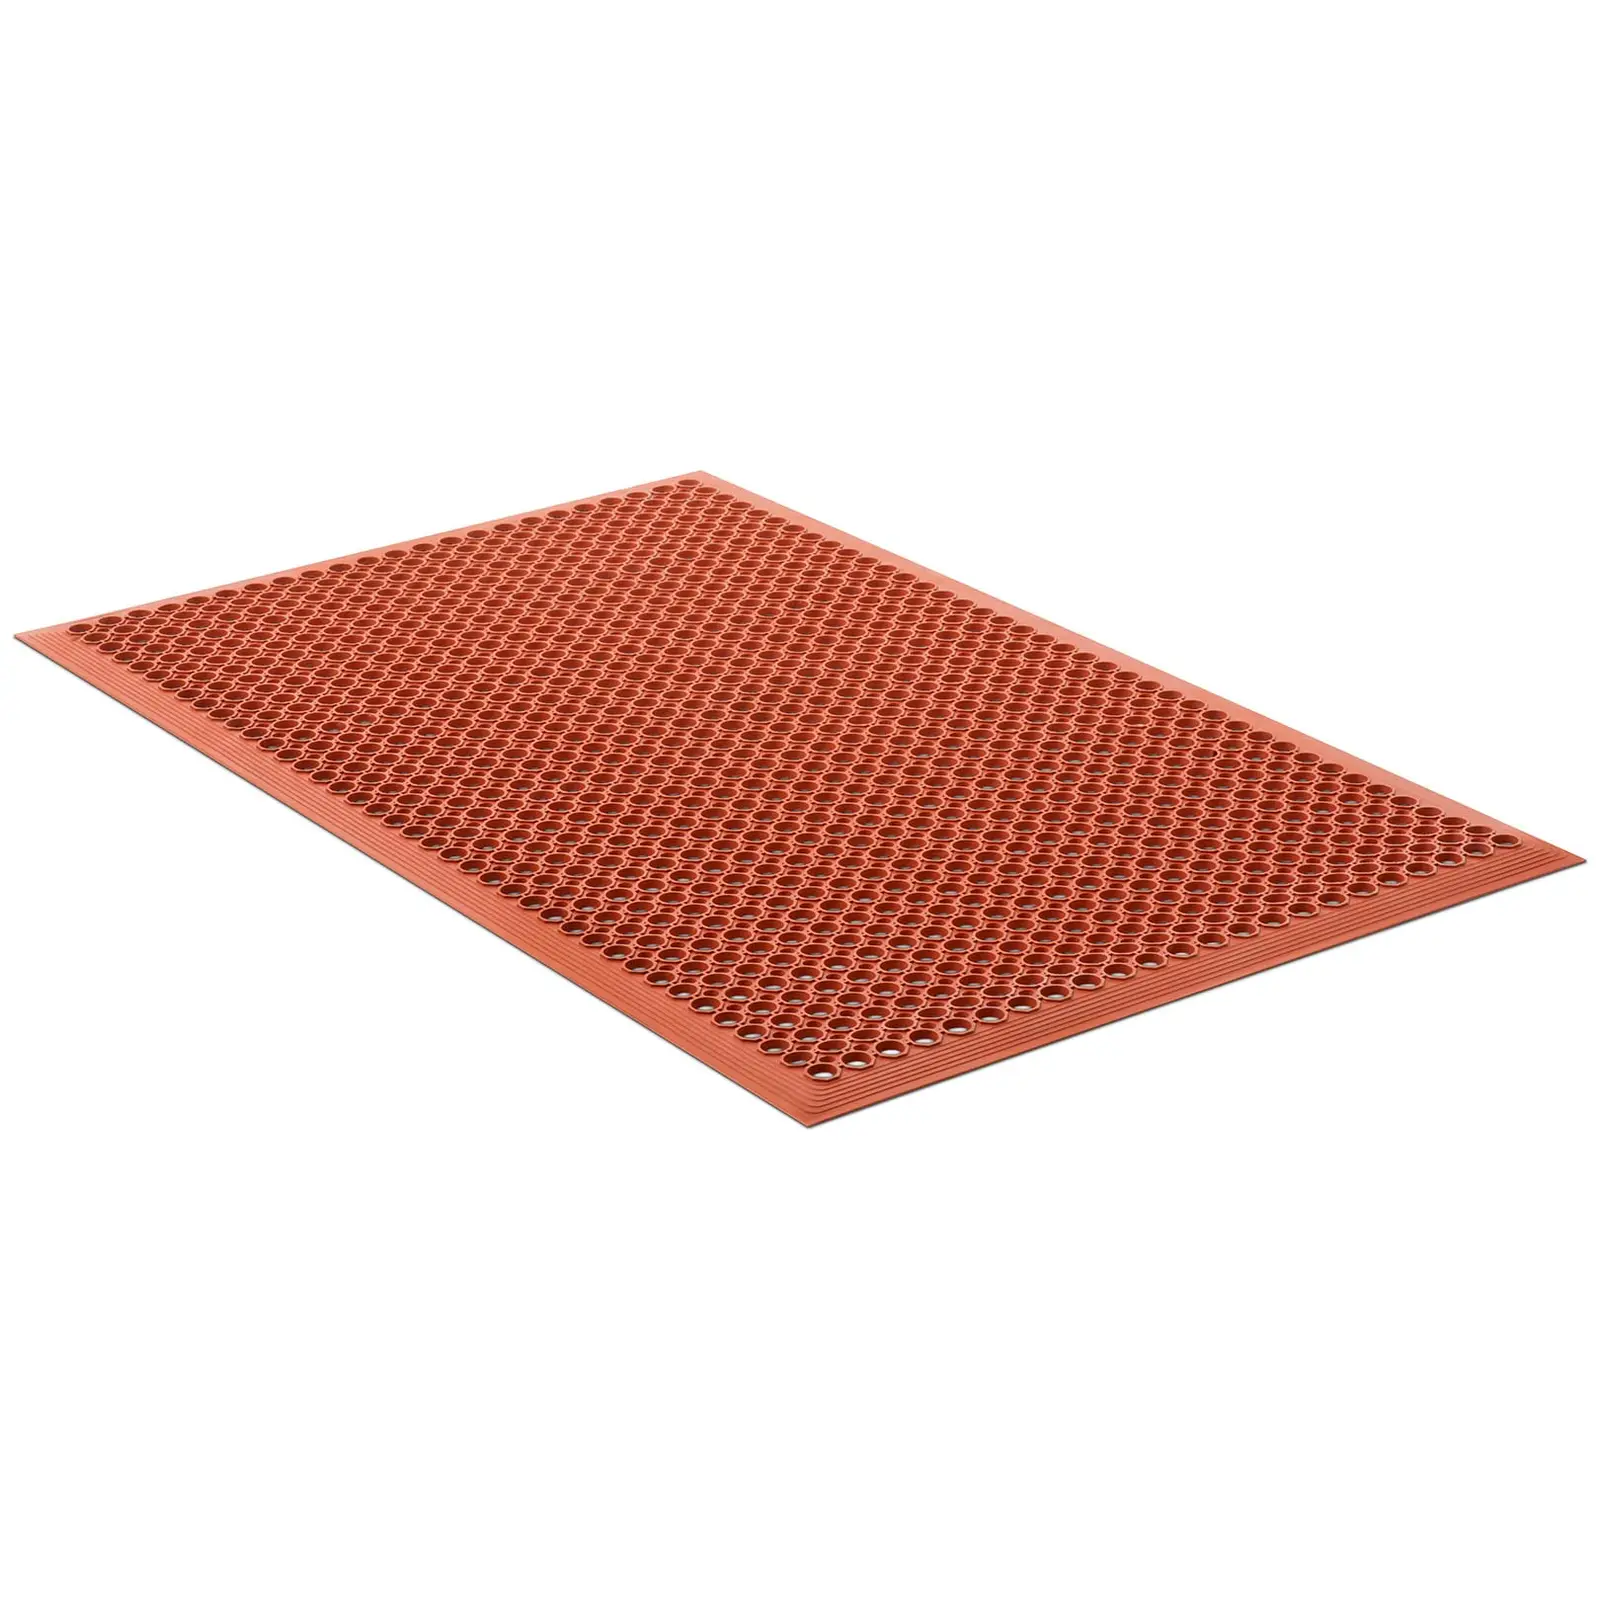 Gumová podložka - 153 x 92 x 1 cm - červená